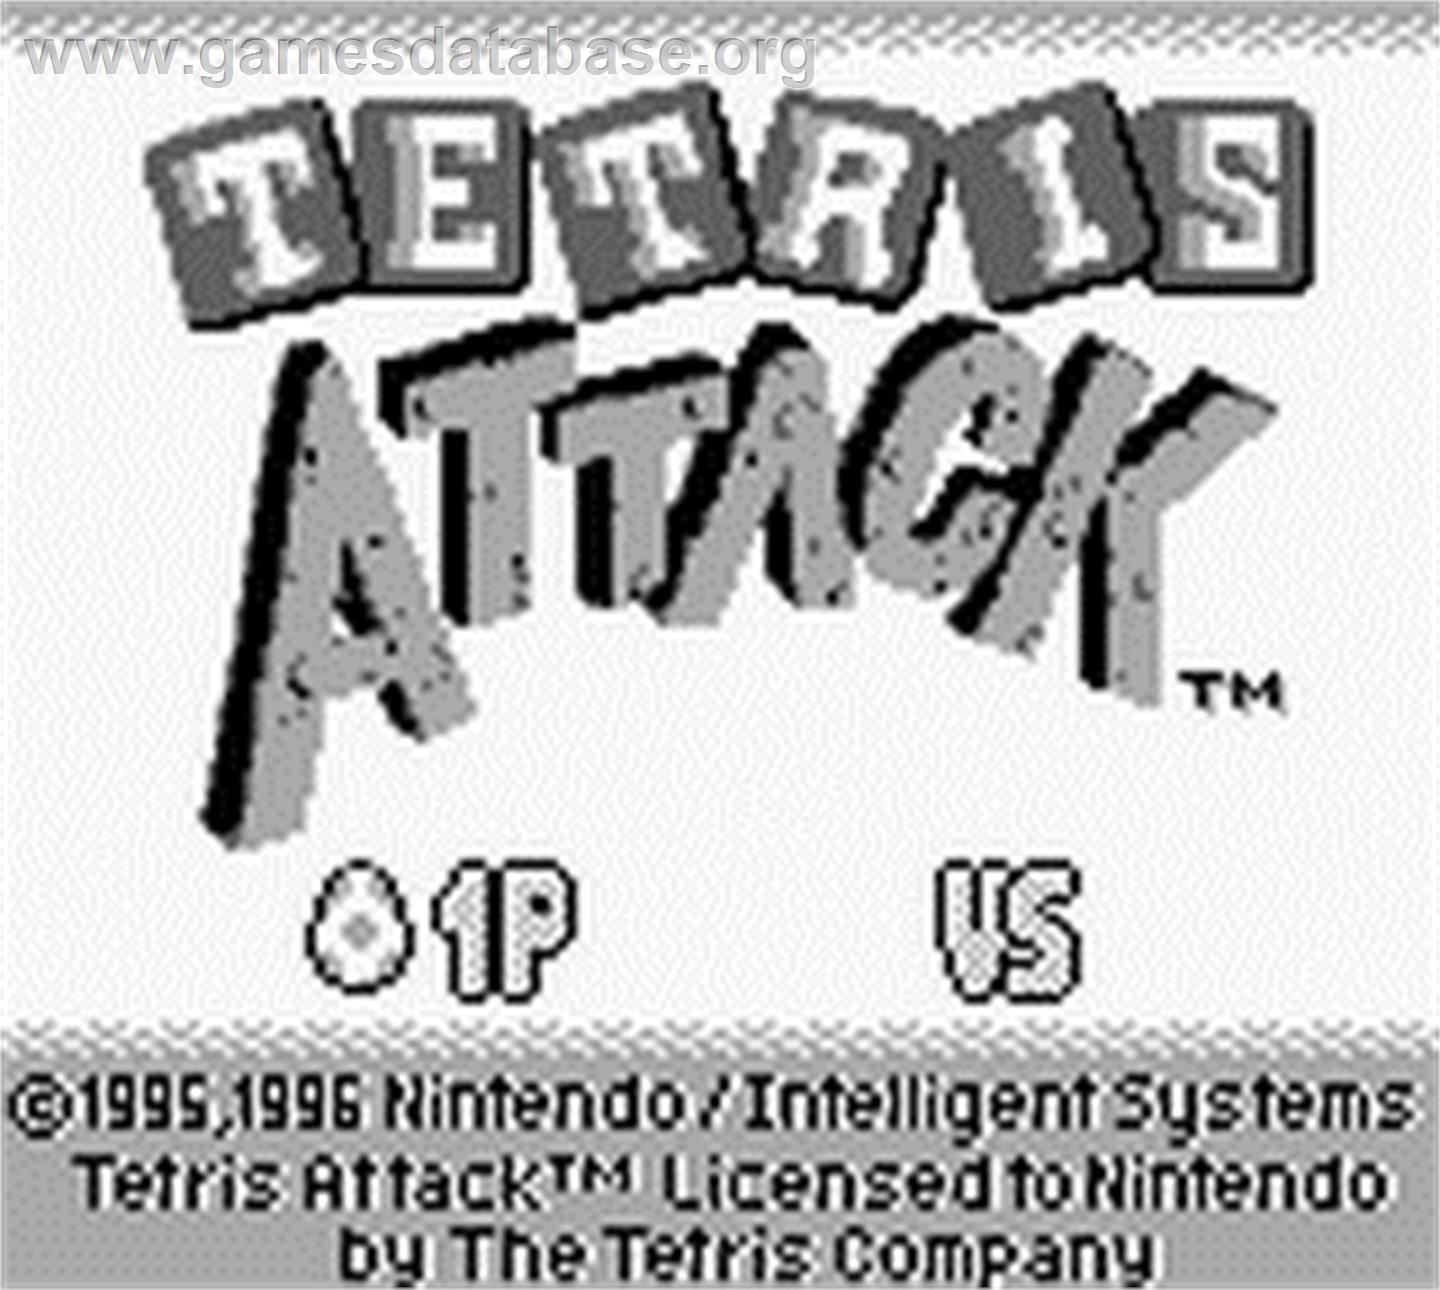 Tetris Attack - Nintendo Game Boy - Artwork - Title Screen